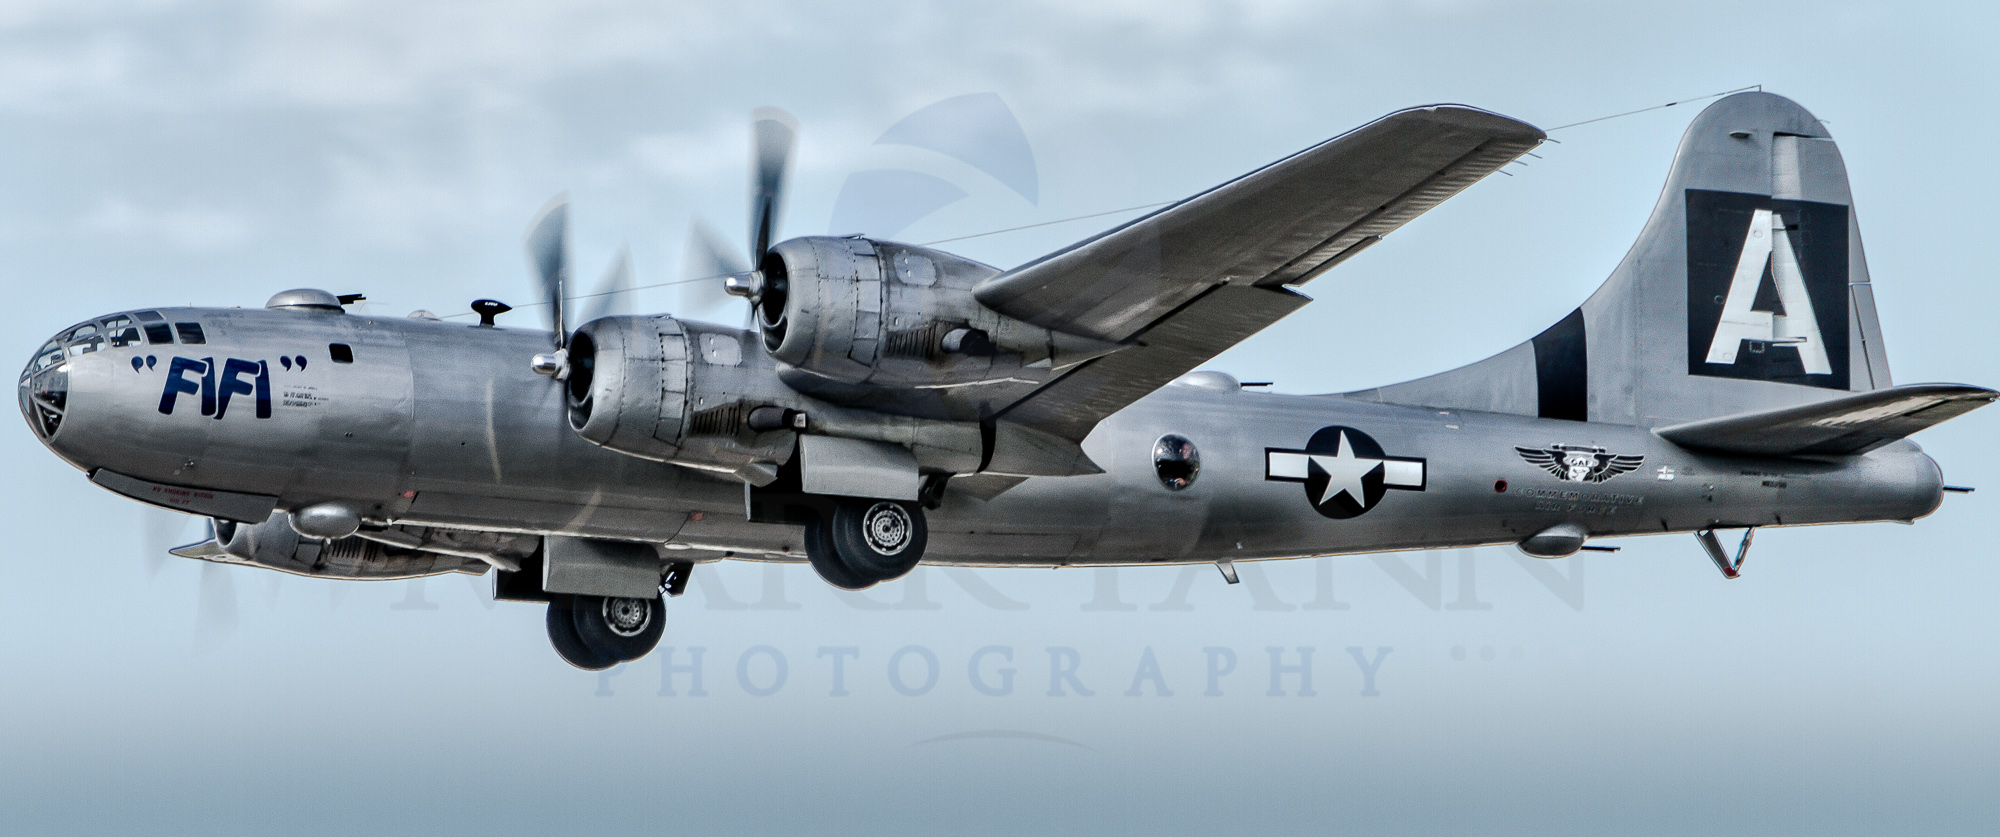 B-29 "FIFI" Taking Off